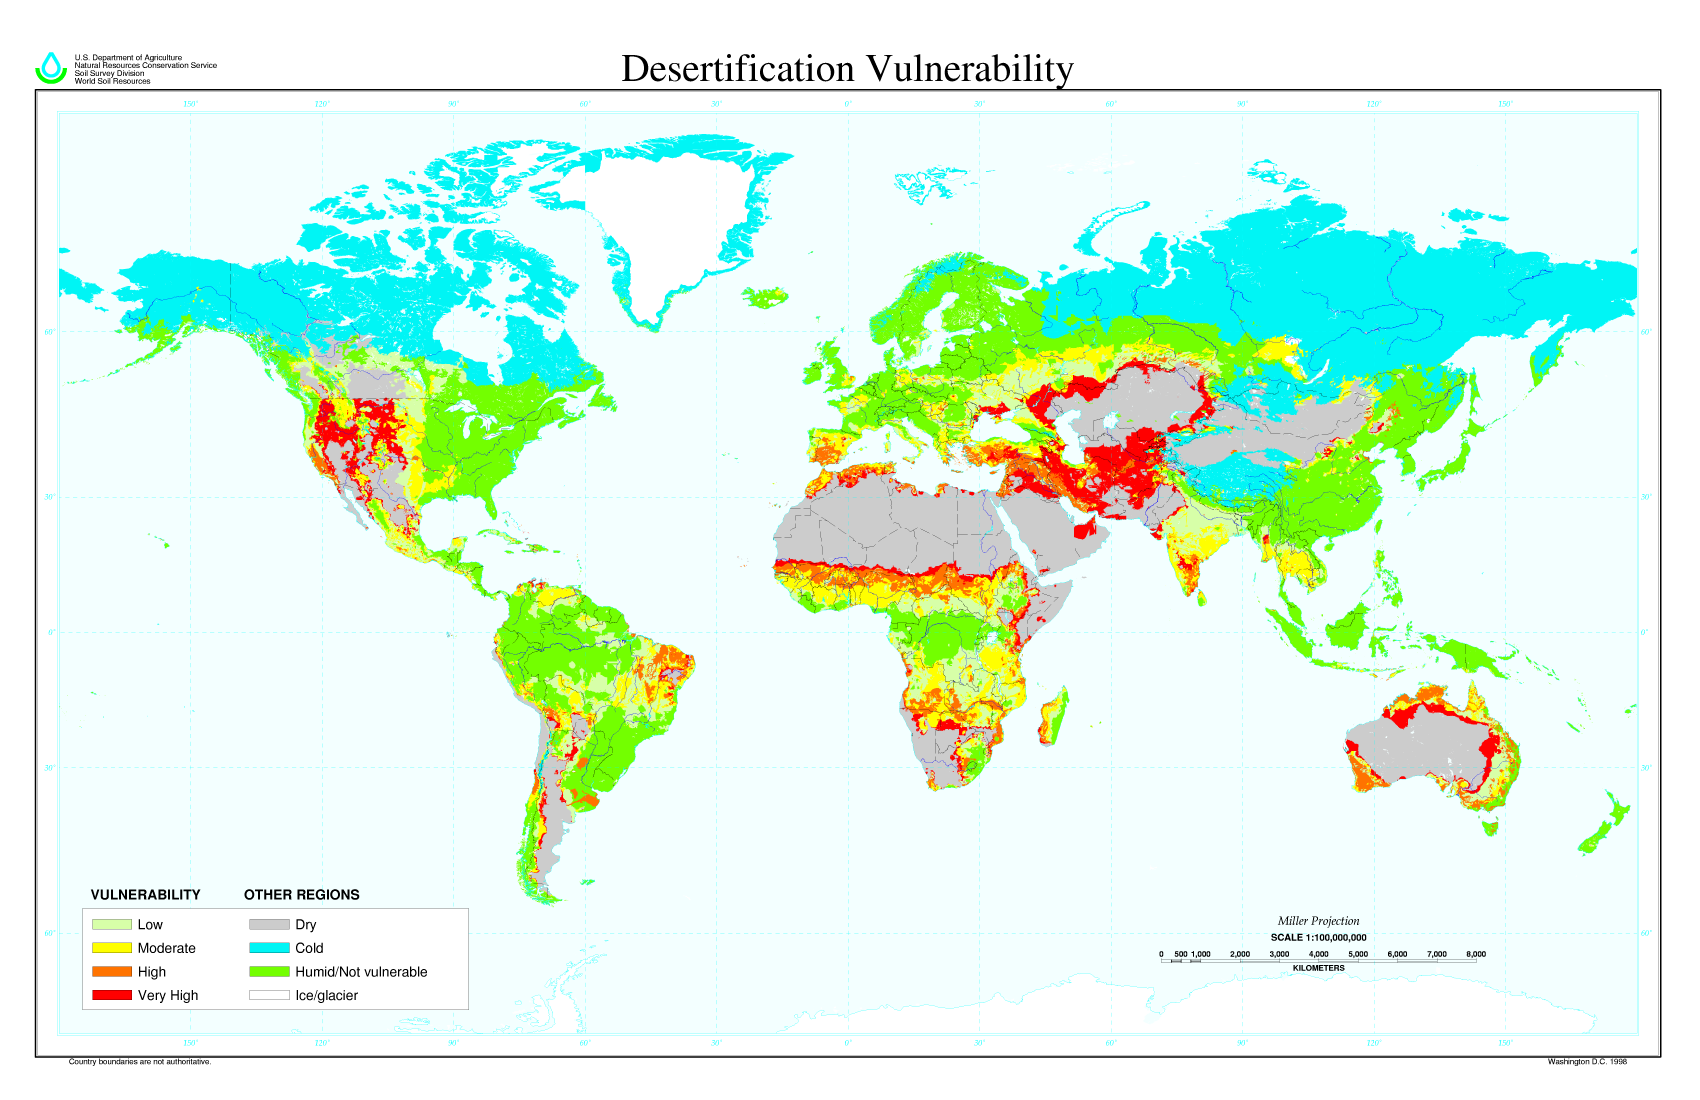 Mapa mundial que muestra el oeste de Estados Unidos y partes de África, Oriente Medio y Australia en alto riesgo de desertificación